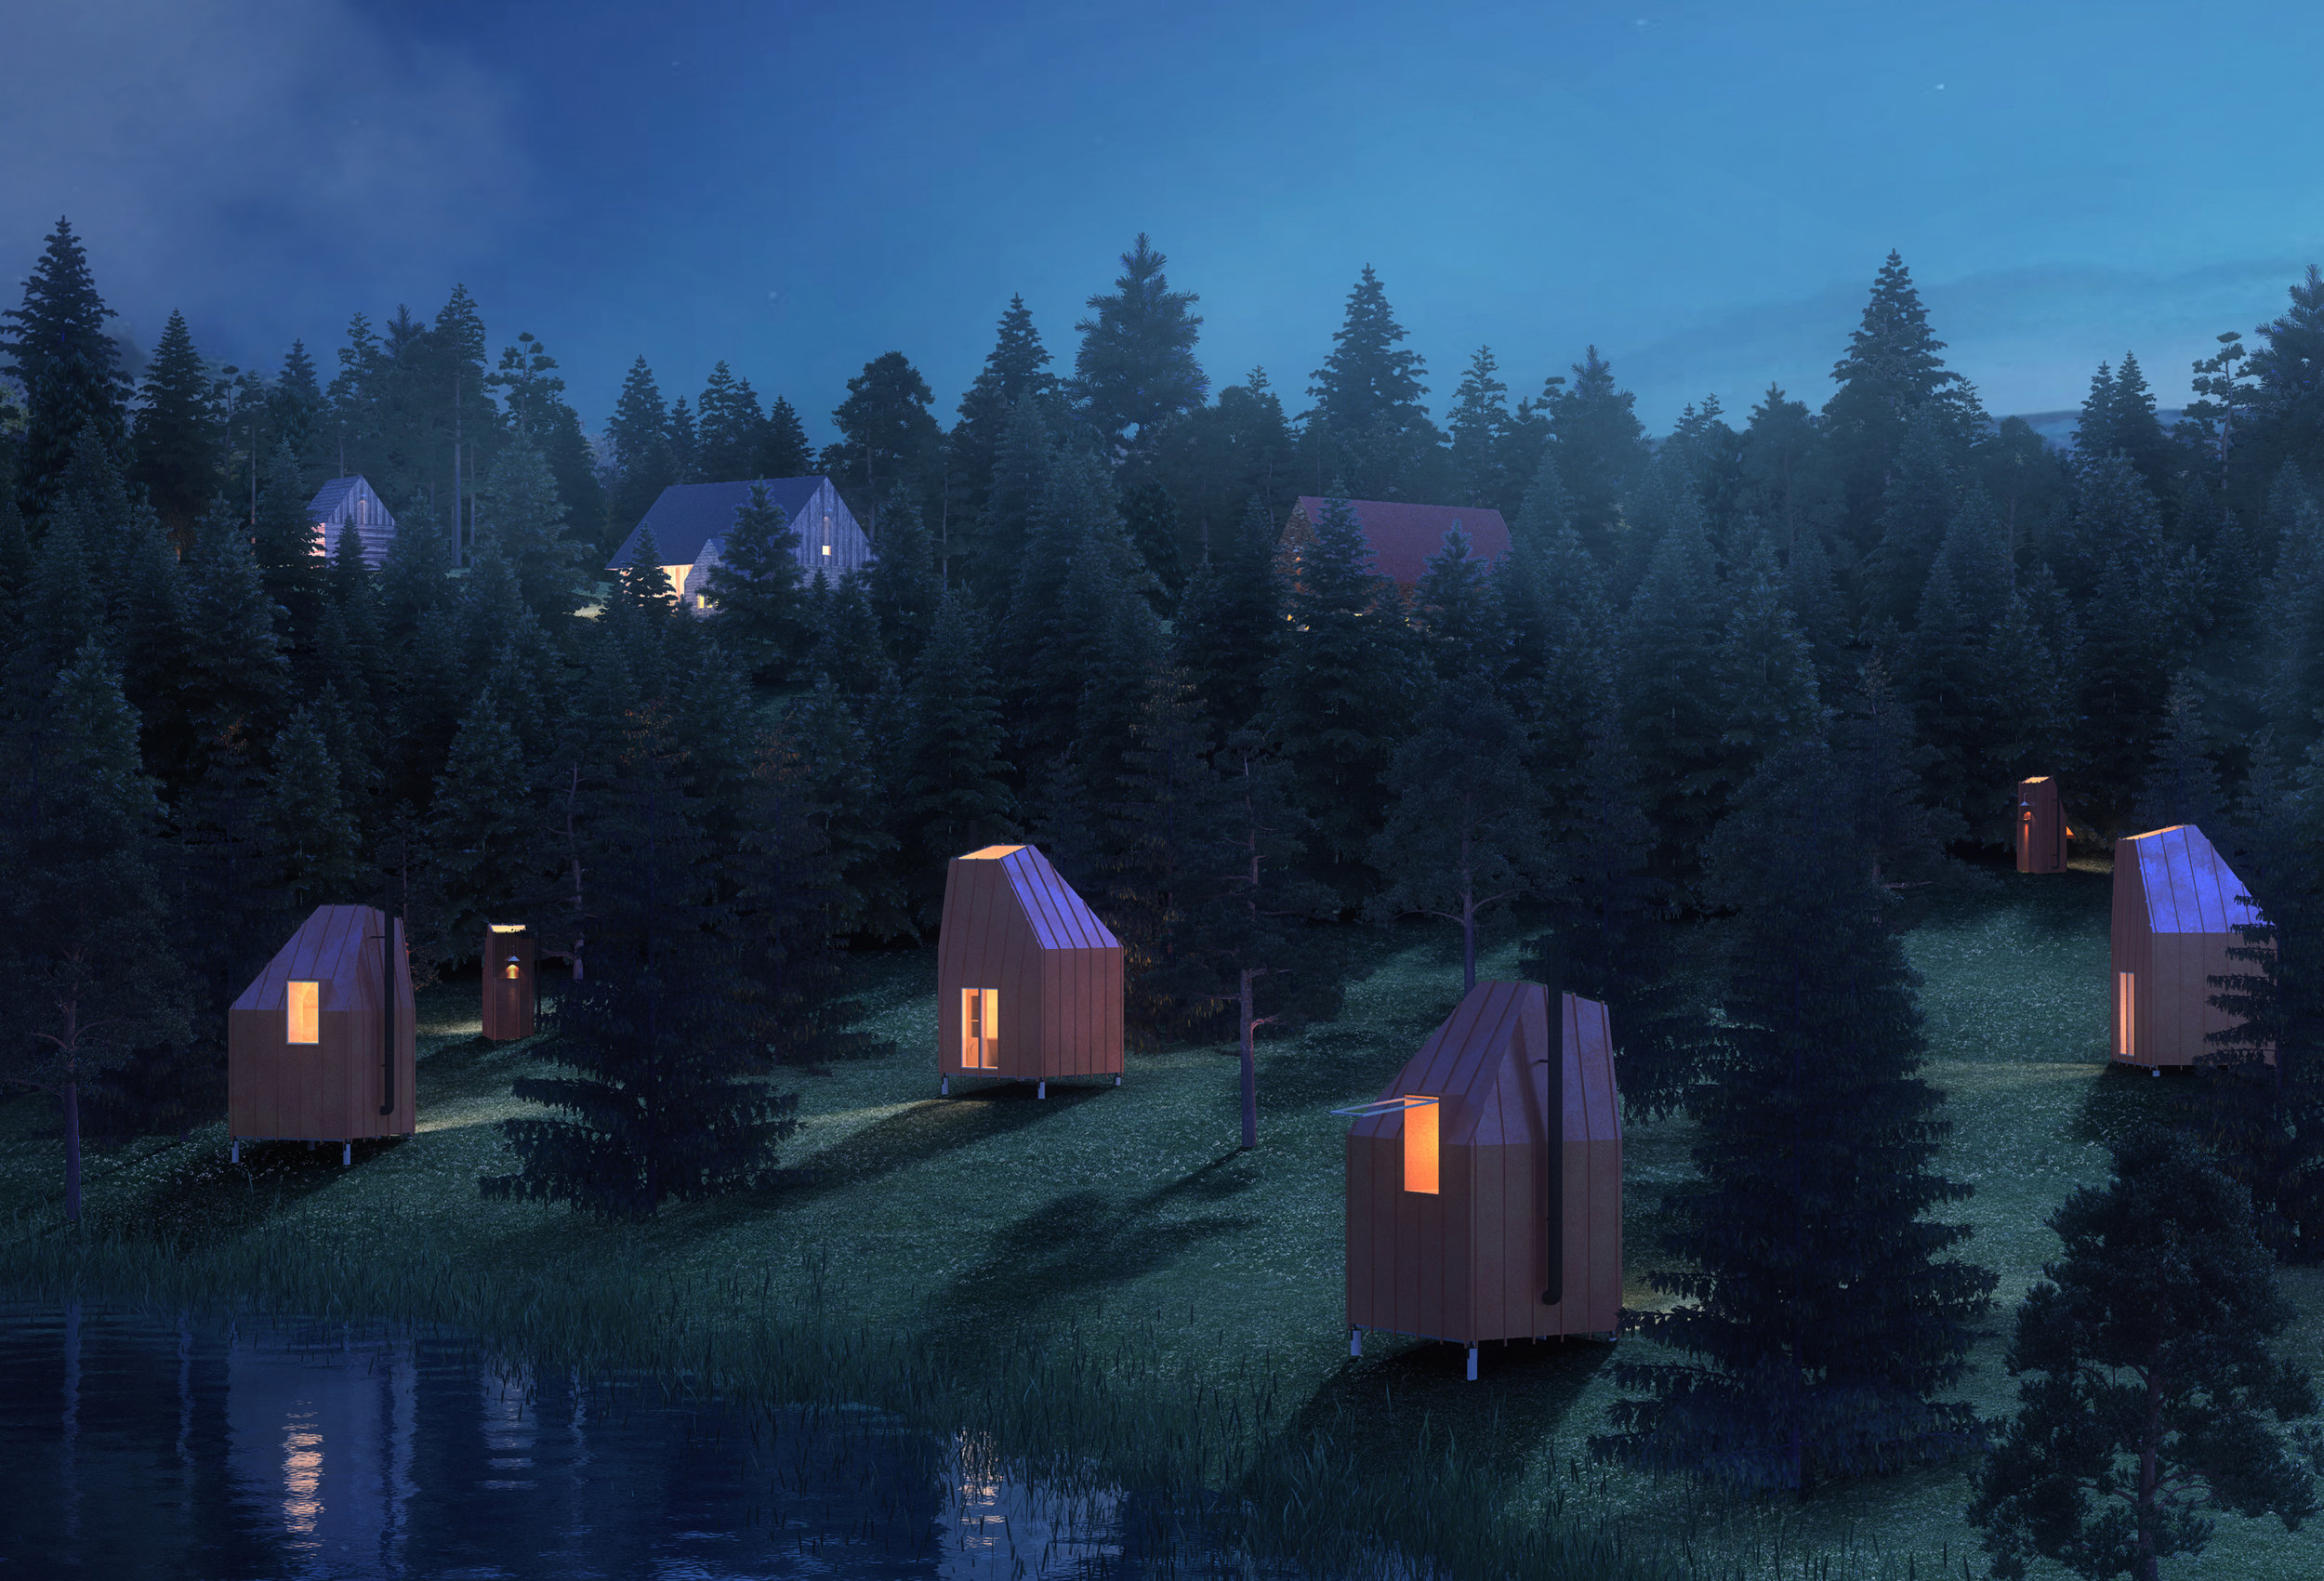 Silent Meditation Forest Cabins